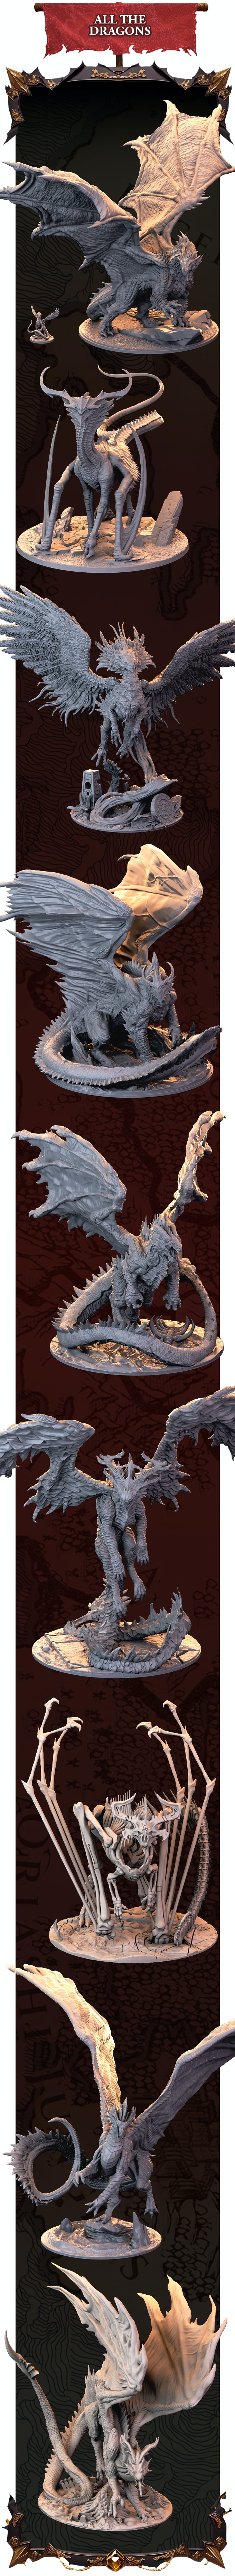 All The Dragons - Dragonbond Battles Of Valerna